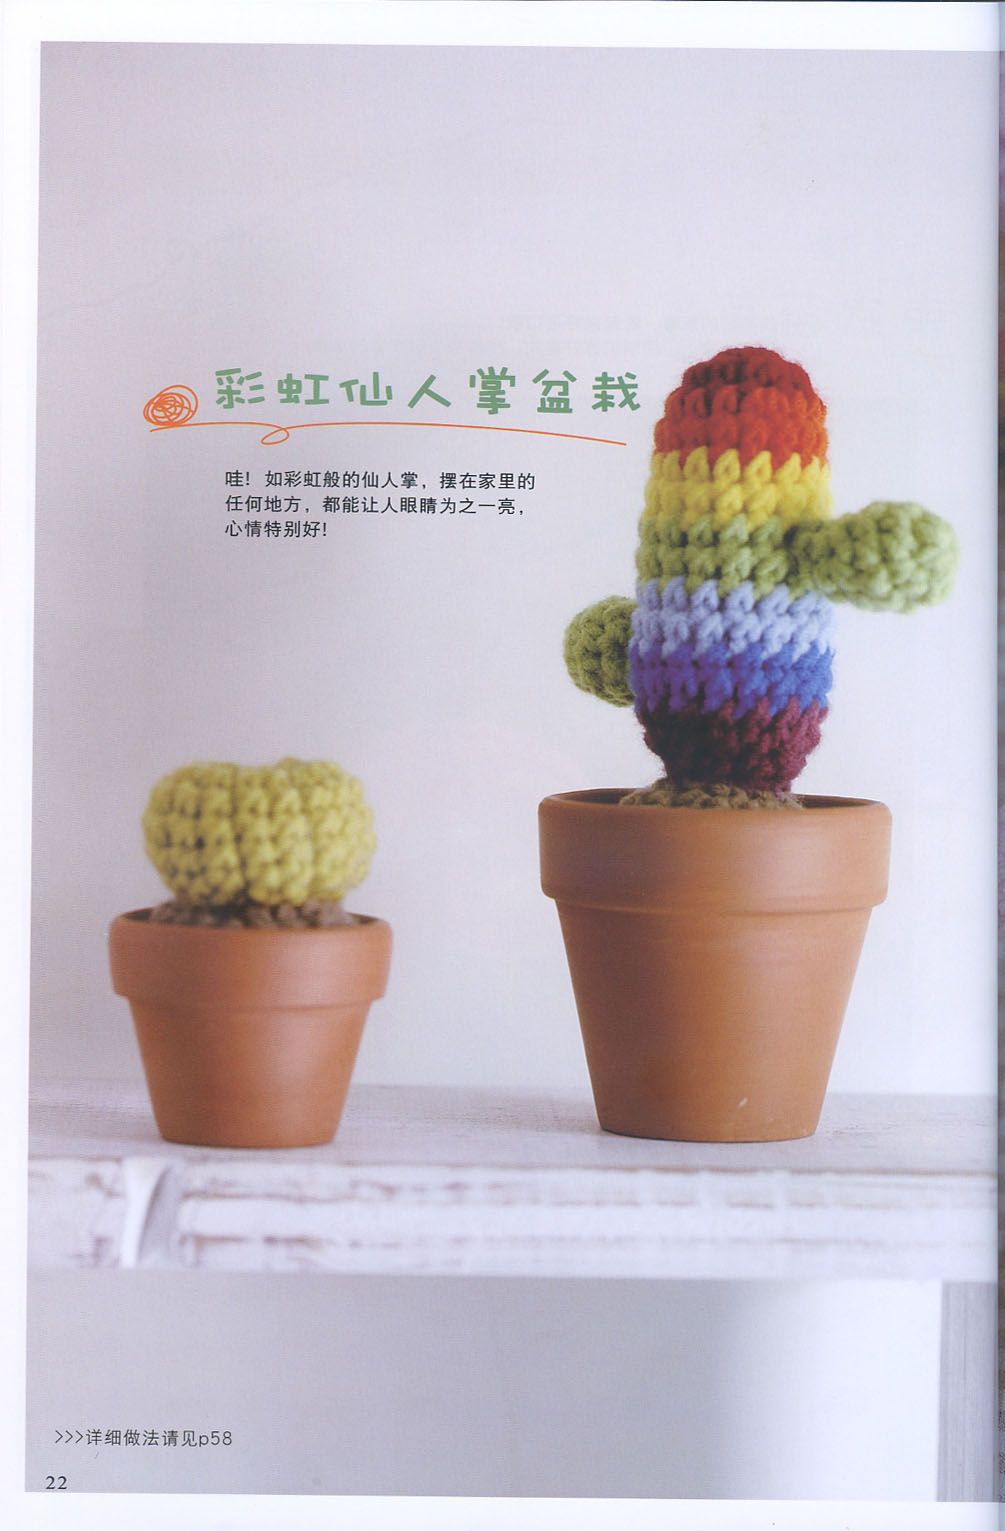 Colorful cactus amigurumi pattern (1)